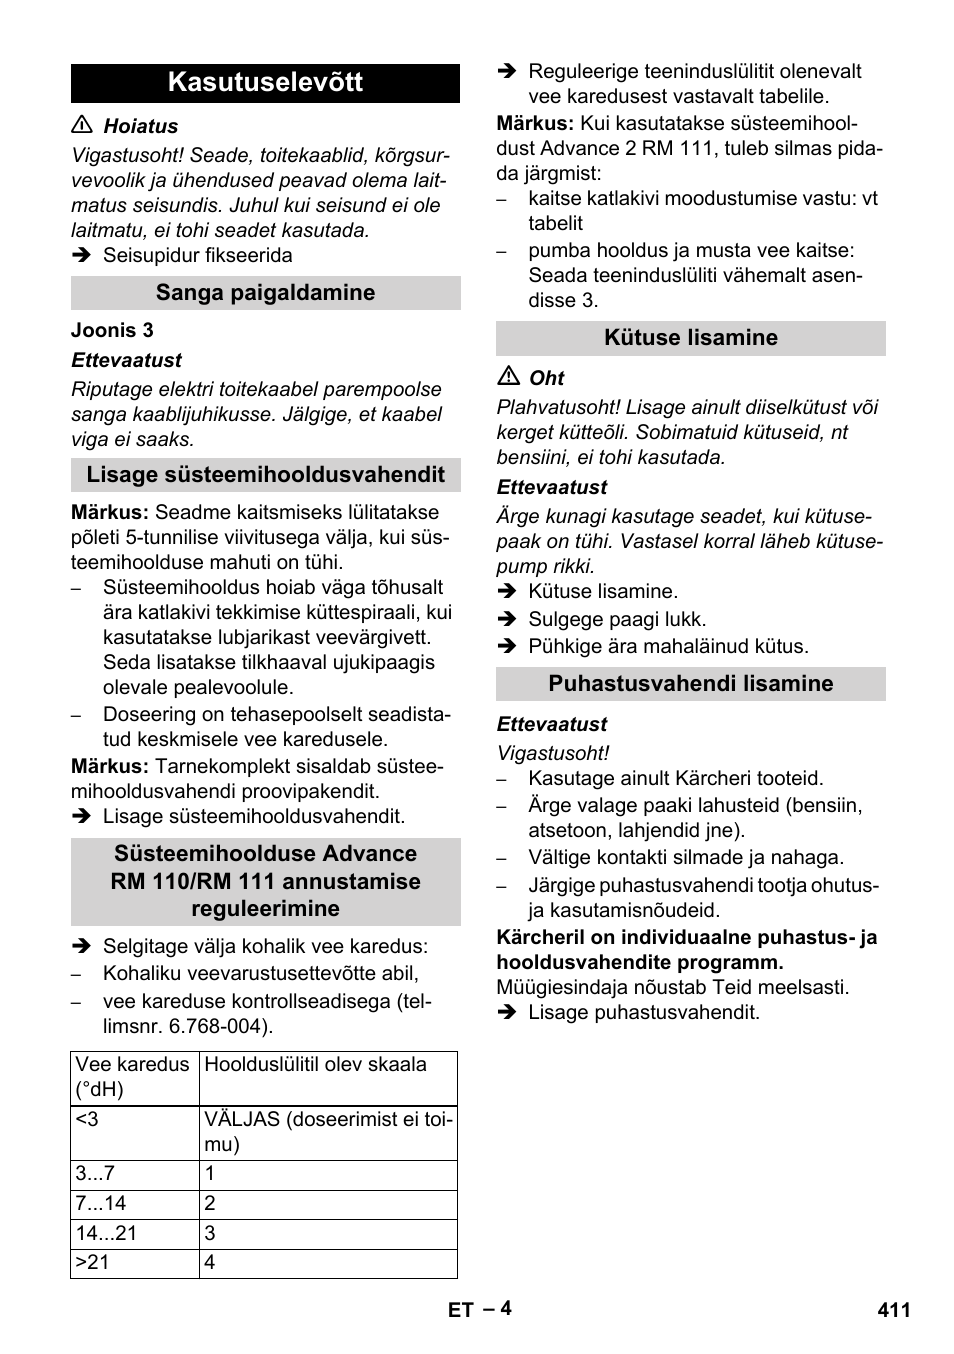 Kasutuselevõtt, Sanga paigaldamine, Lisage süsteemihooldusvahendit | Karcher  HDS 10-20 -4M CLASSIC EU-I User Manual | Page 411 / 480 | Original mode